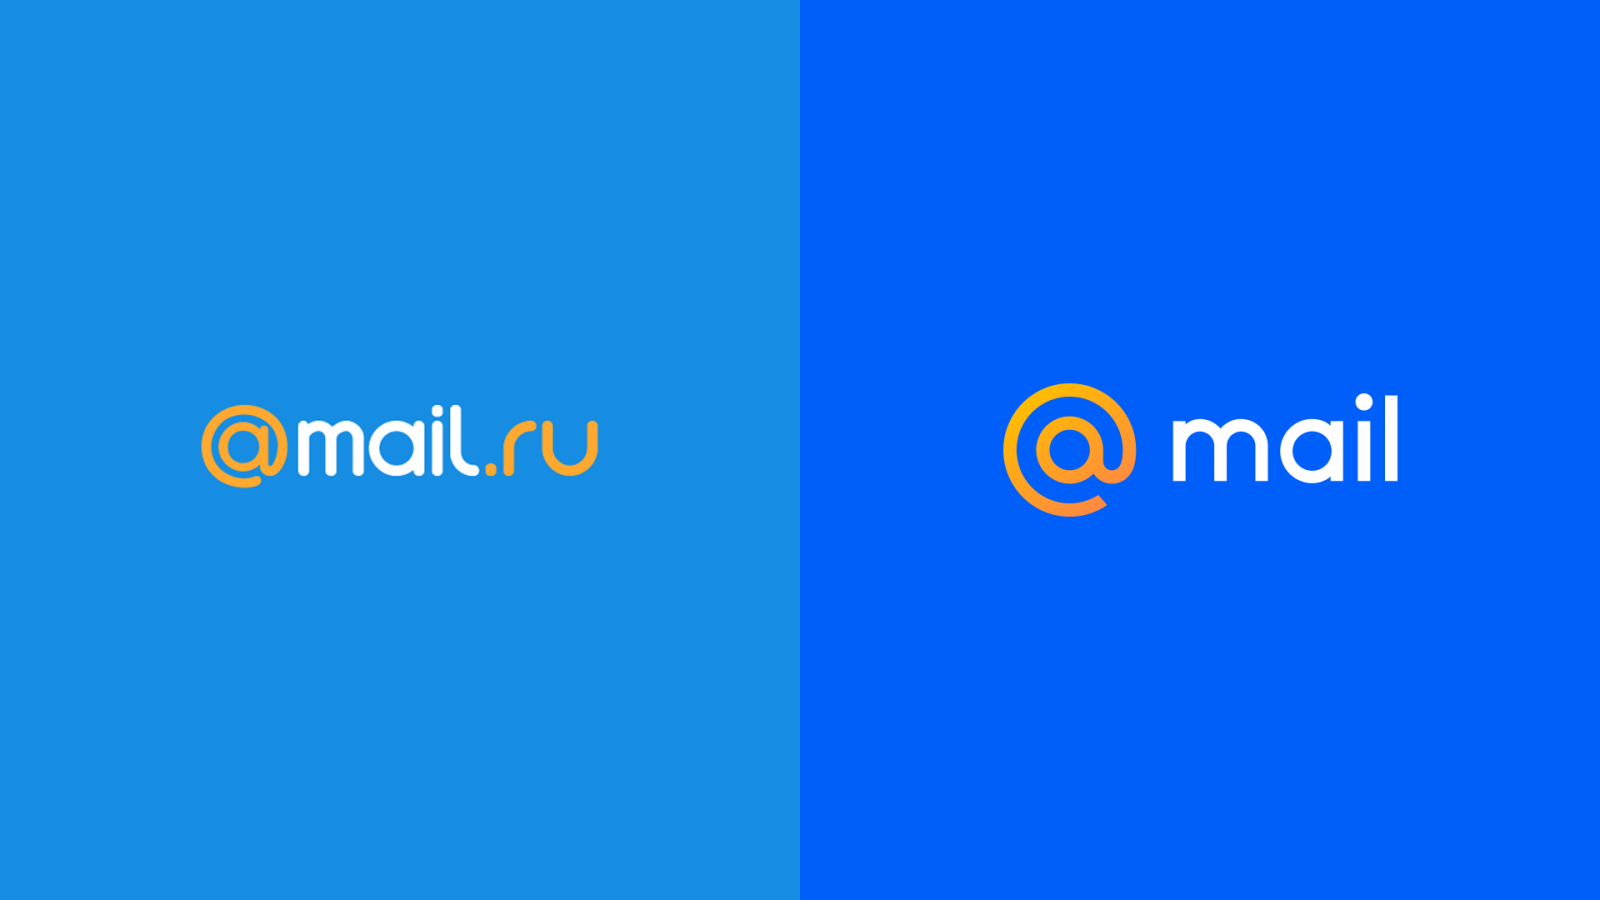 Win mail ru. Mail. Почта майл. Mail.ru лого. Логотип почты мейл.